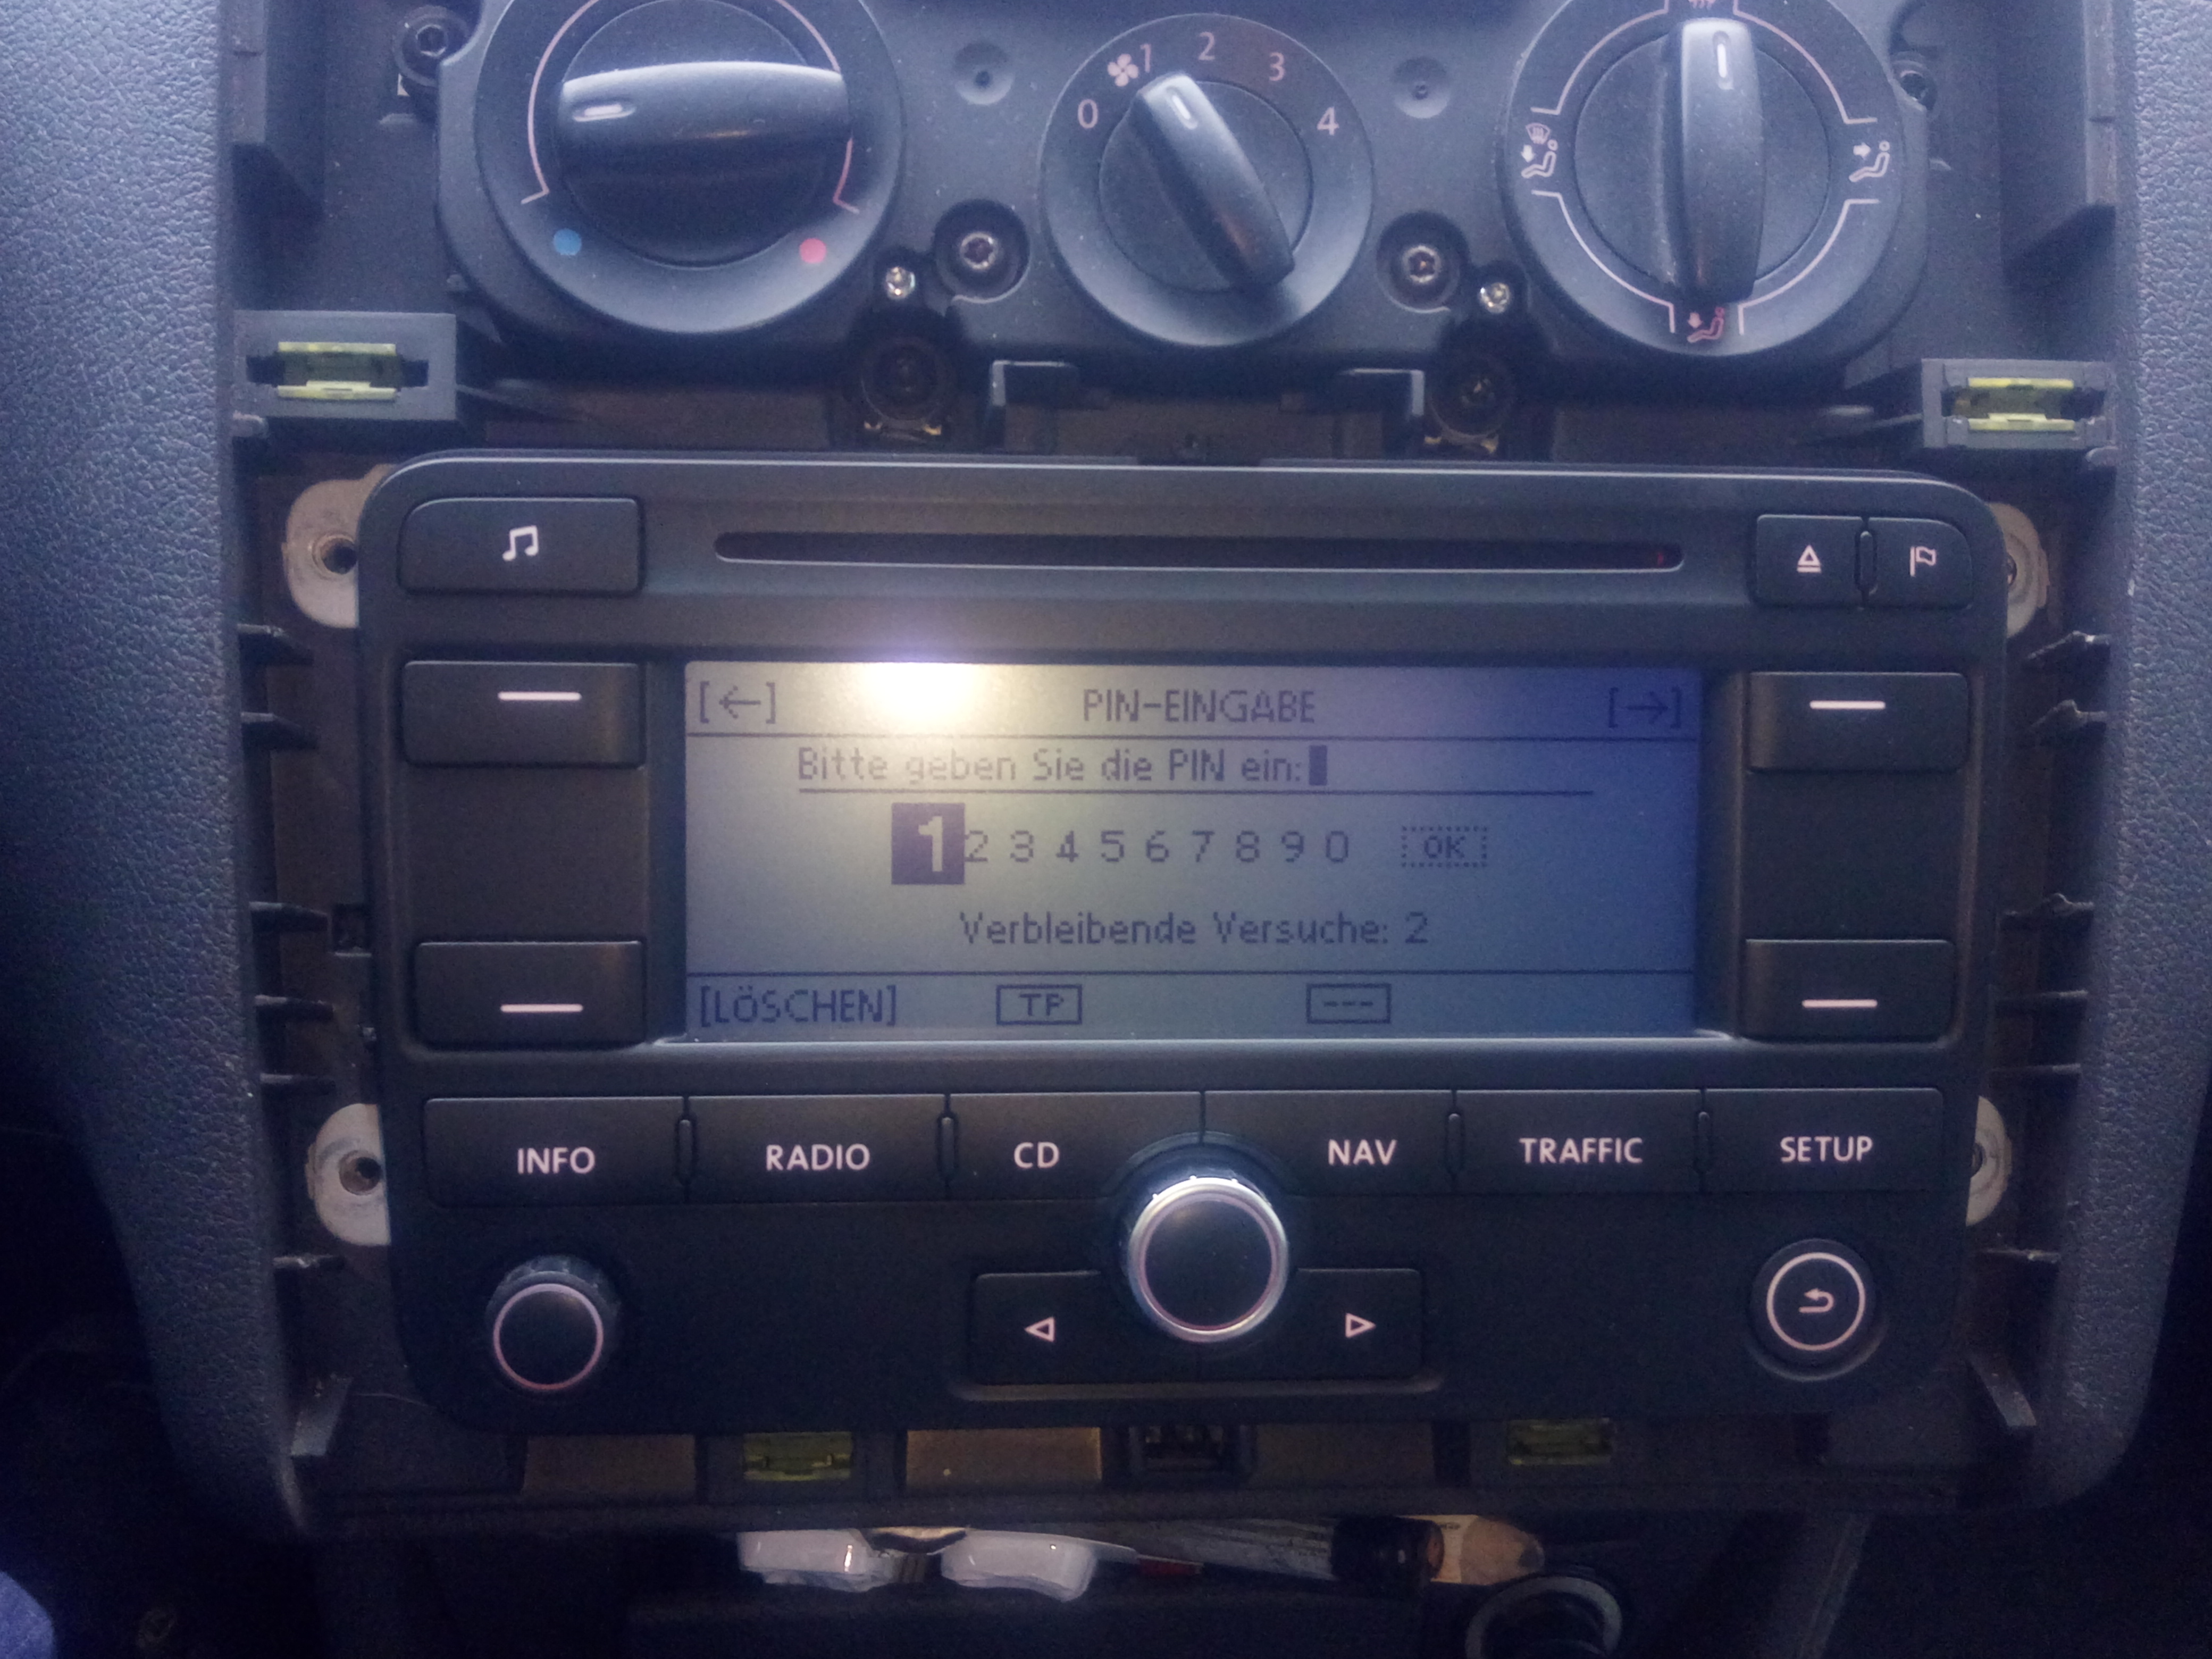 VW RNS300 radio nie chce wystartowac, wlacza sie i wylacza